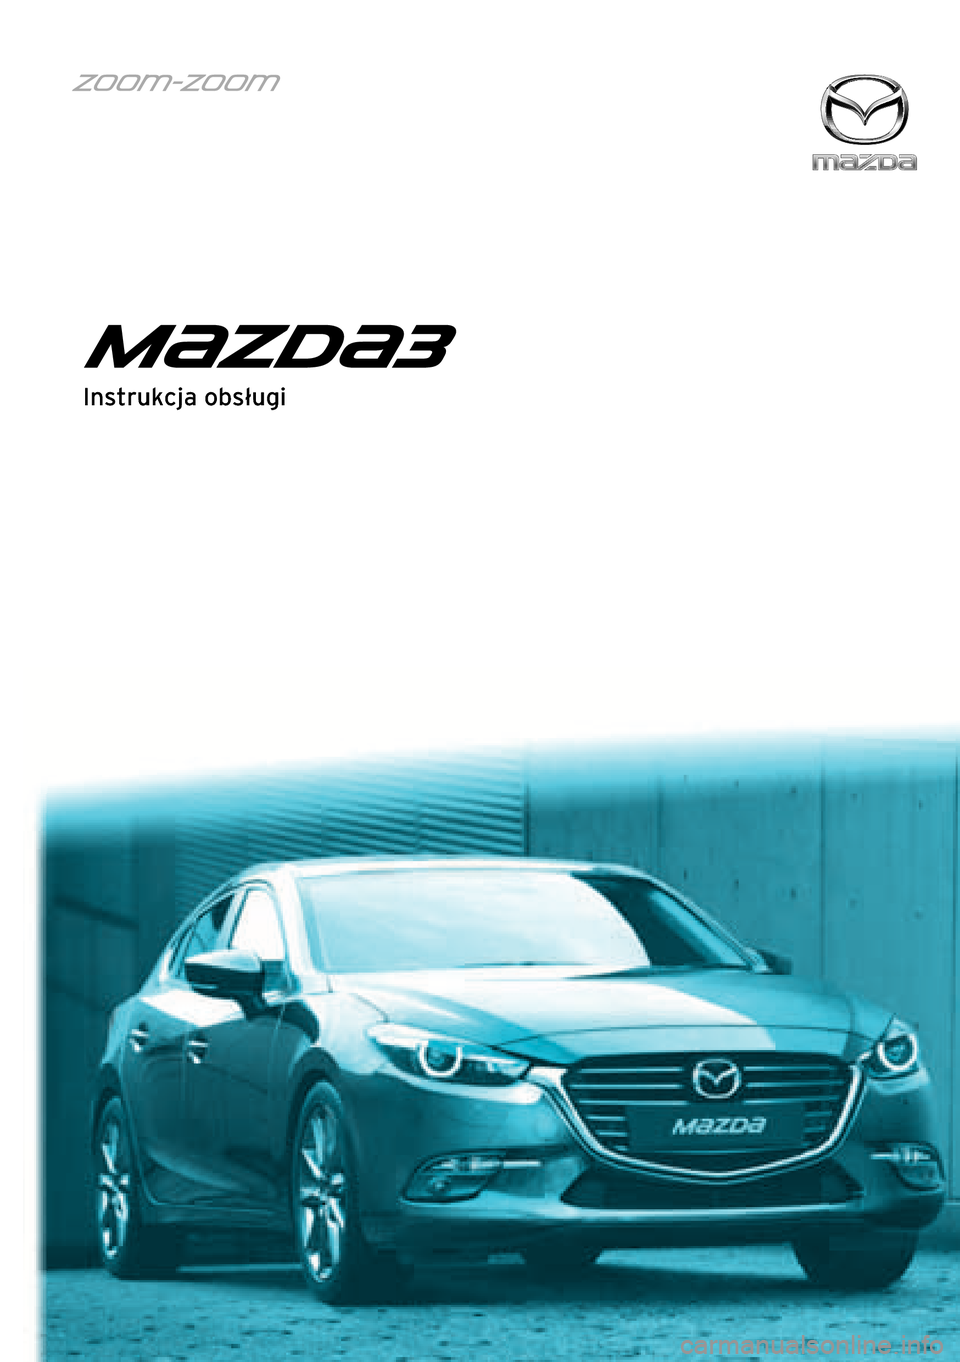 Czynności Obsługowe Mazda 3Bm 2.0 Po 60000Km